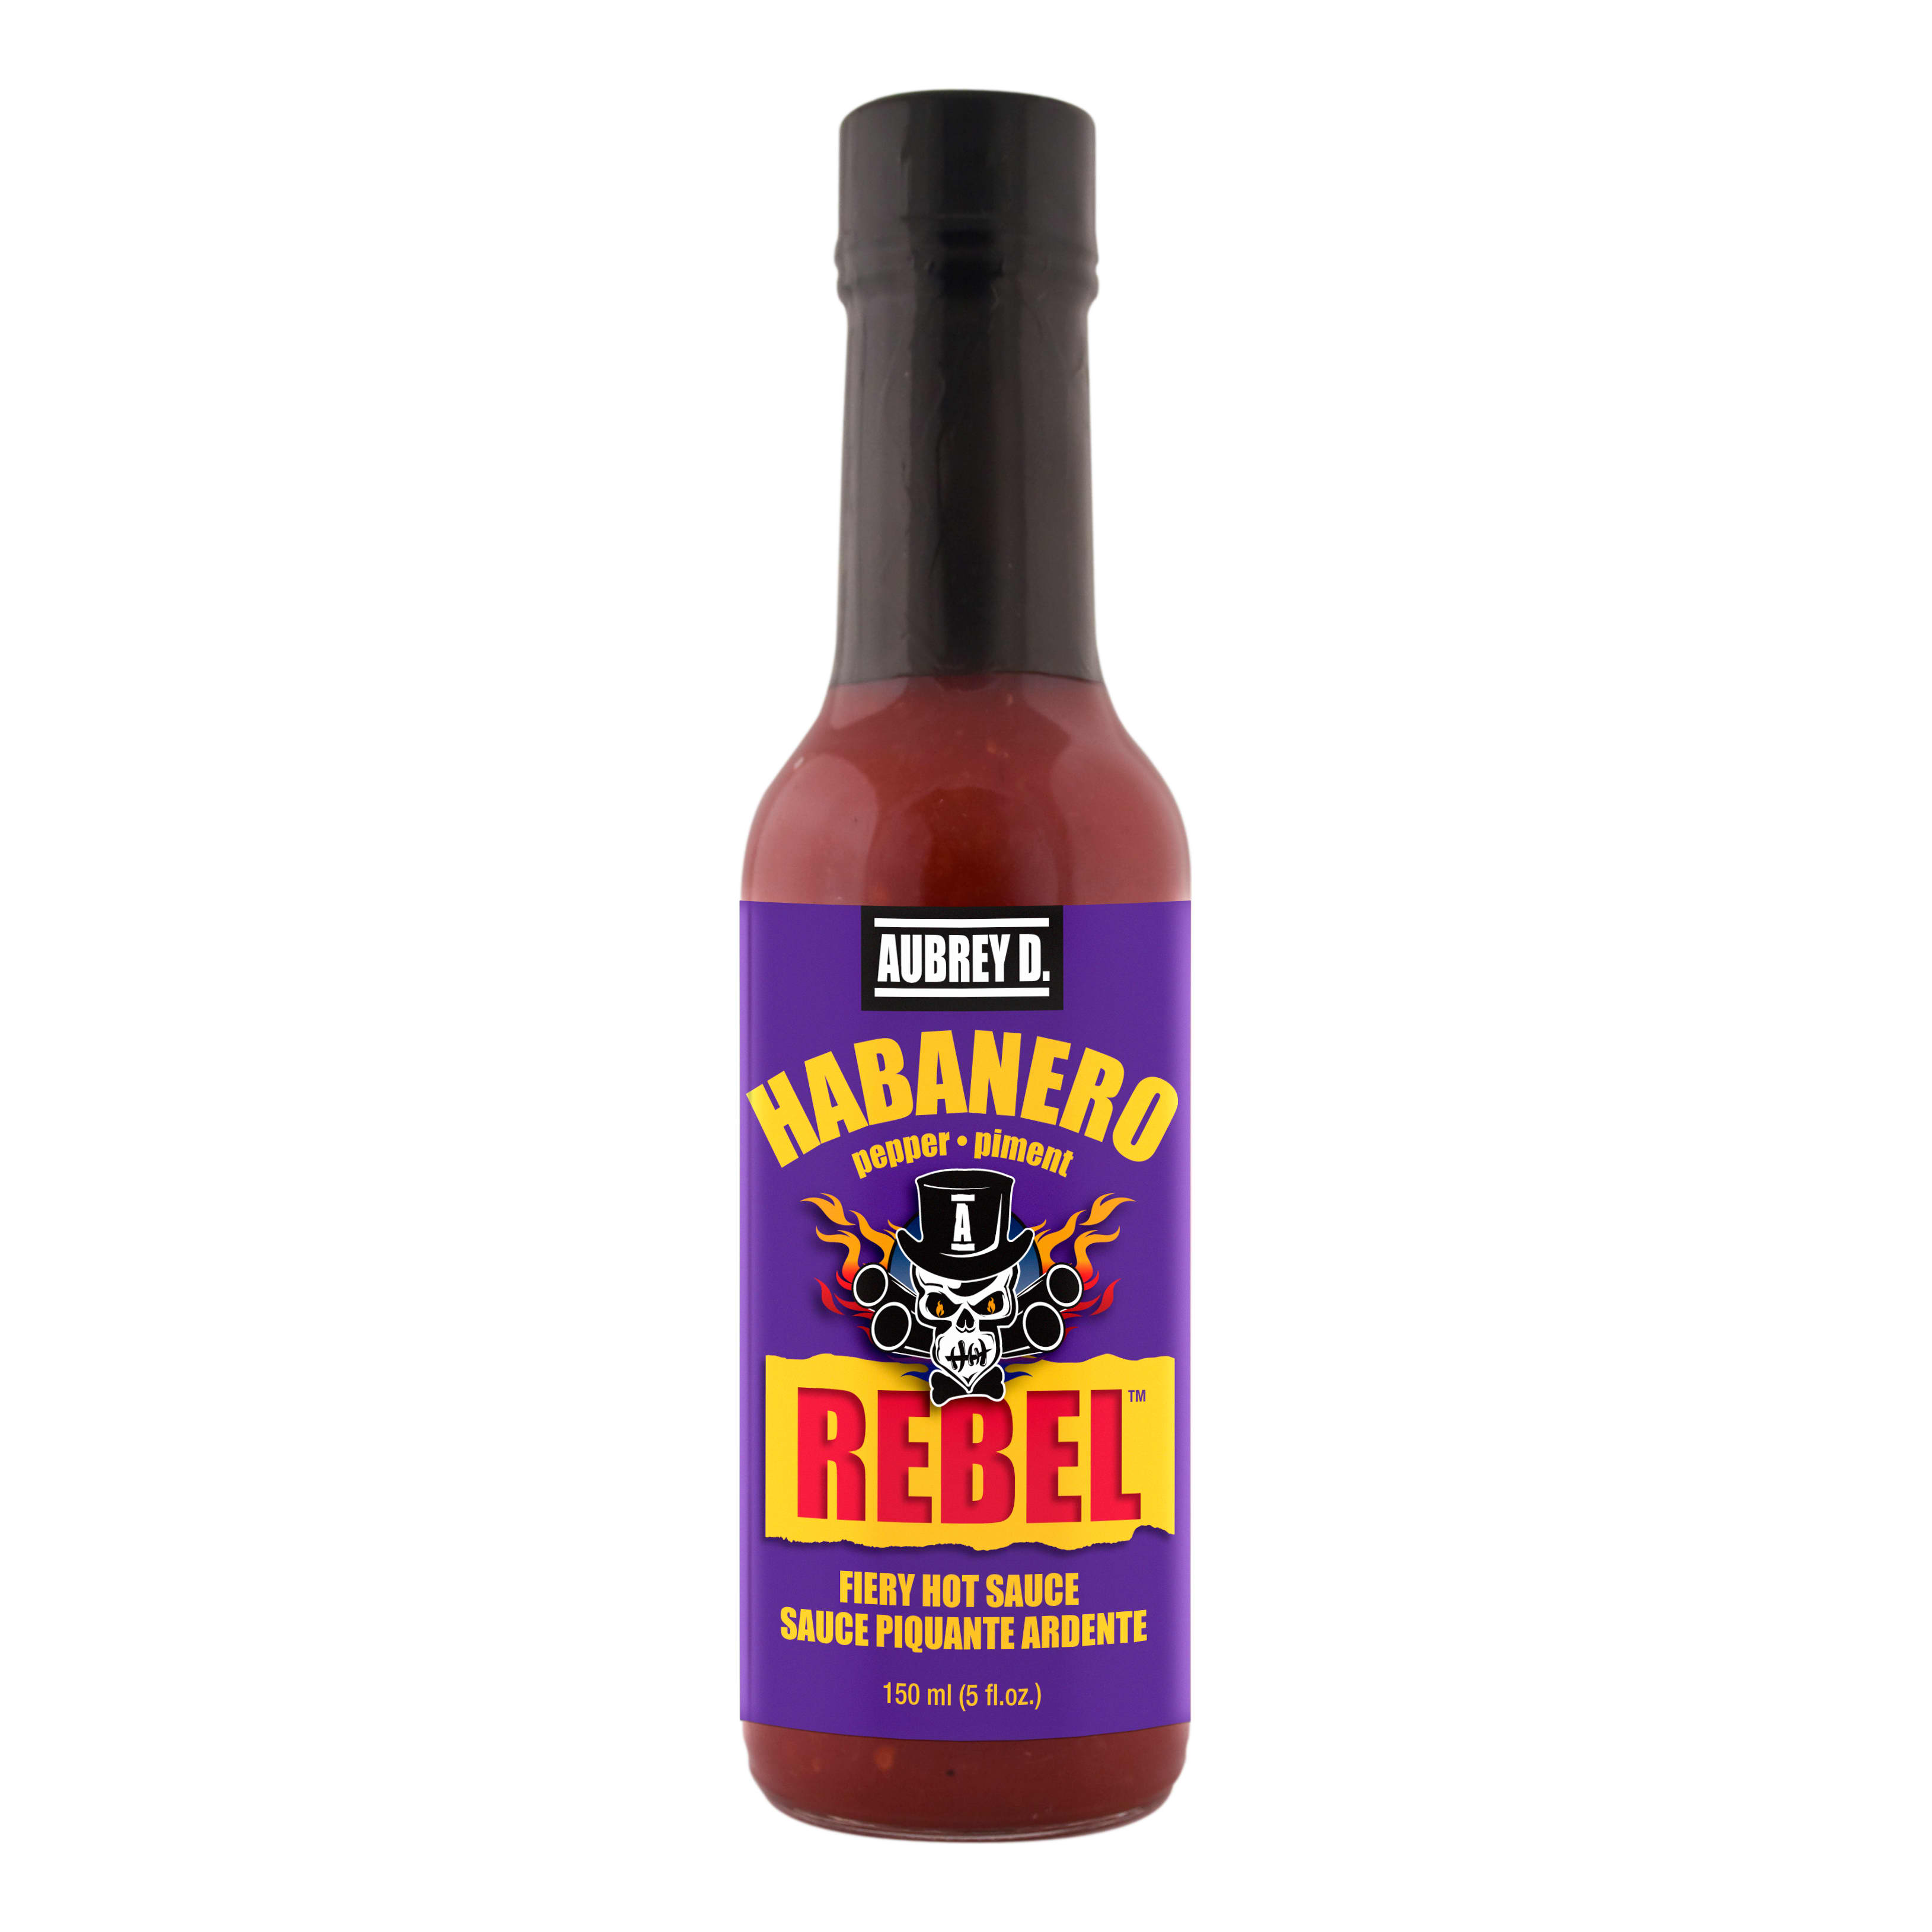 Aubrey D. Rebel Hot Aubrey D. Rebel Habanero Plus Hot Sauce